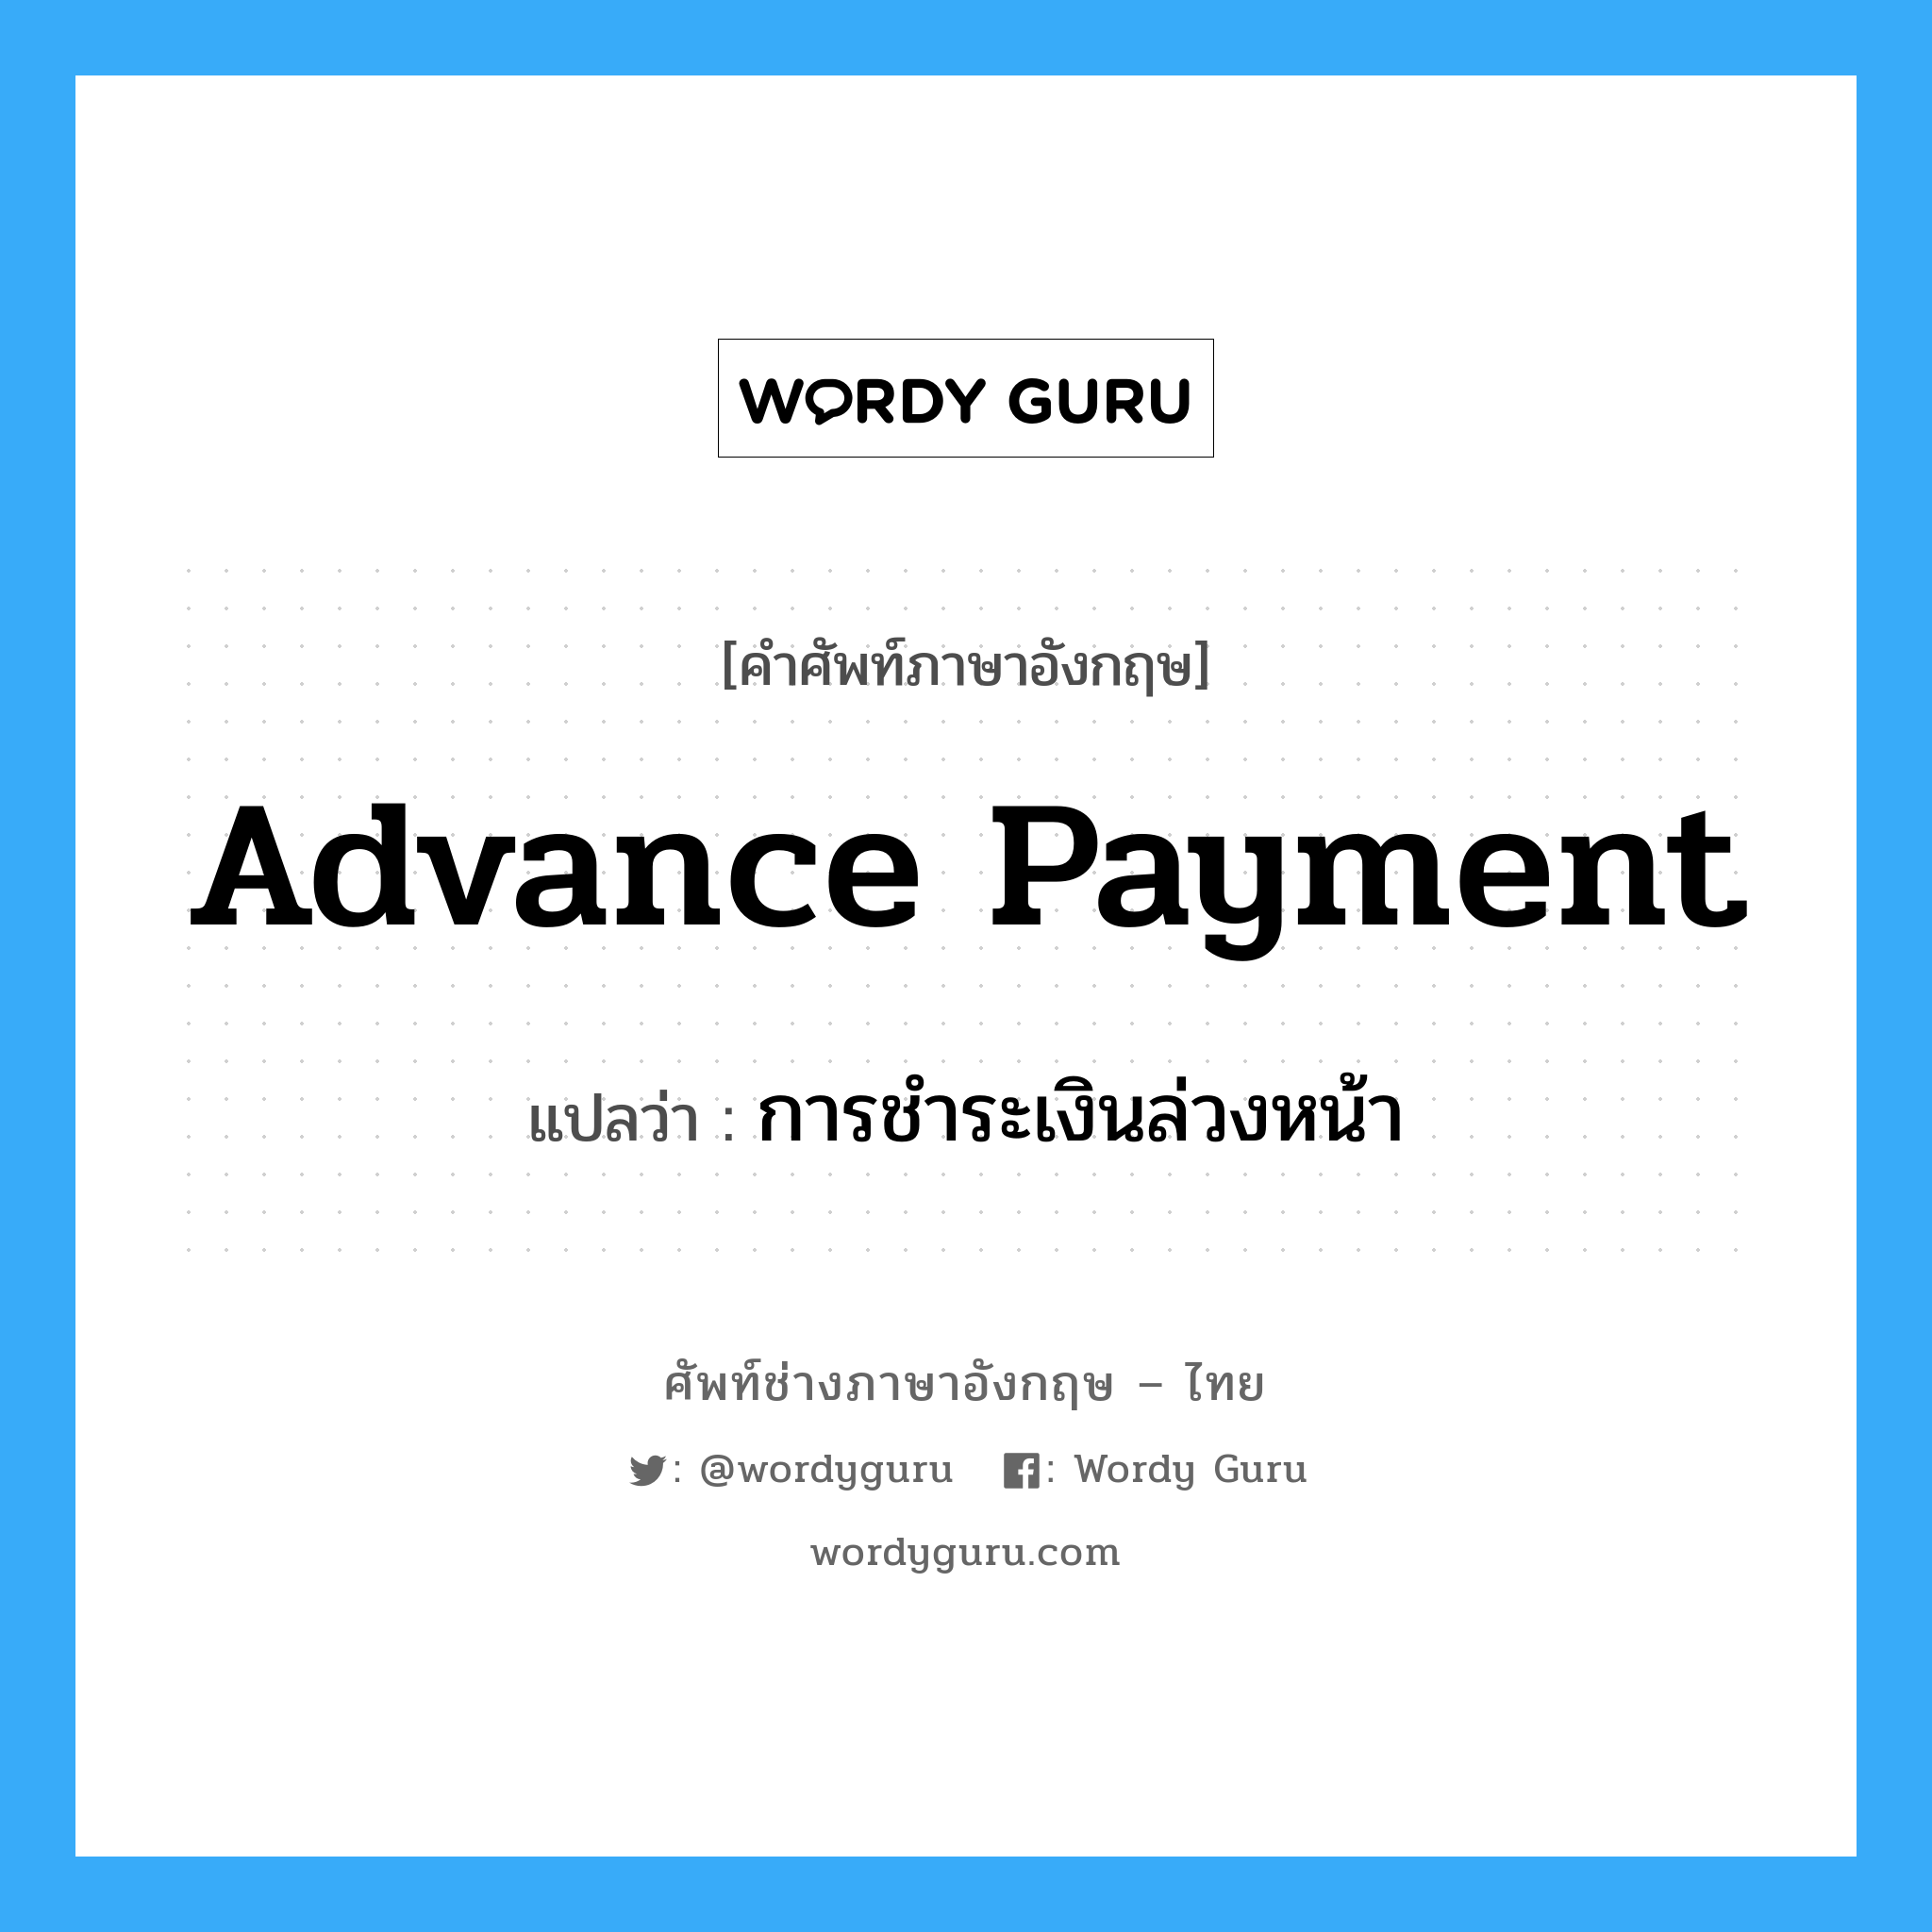 การชำระเงินล่วงหน้า ภาษาอังกฤษ?, คำศัพท์ช่างภาษาอังกฤษ - ไทย การชำระเงินล่วงหน้า คำศัพท์ภาษาอังกฤษ การชำระเงินล่วงหน้า แปลว่า Advance payment